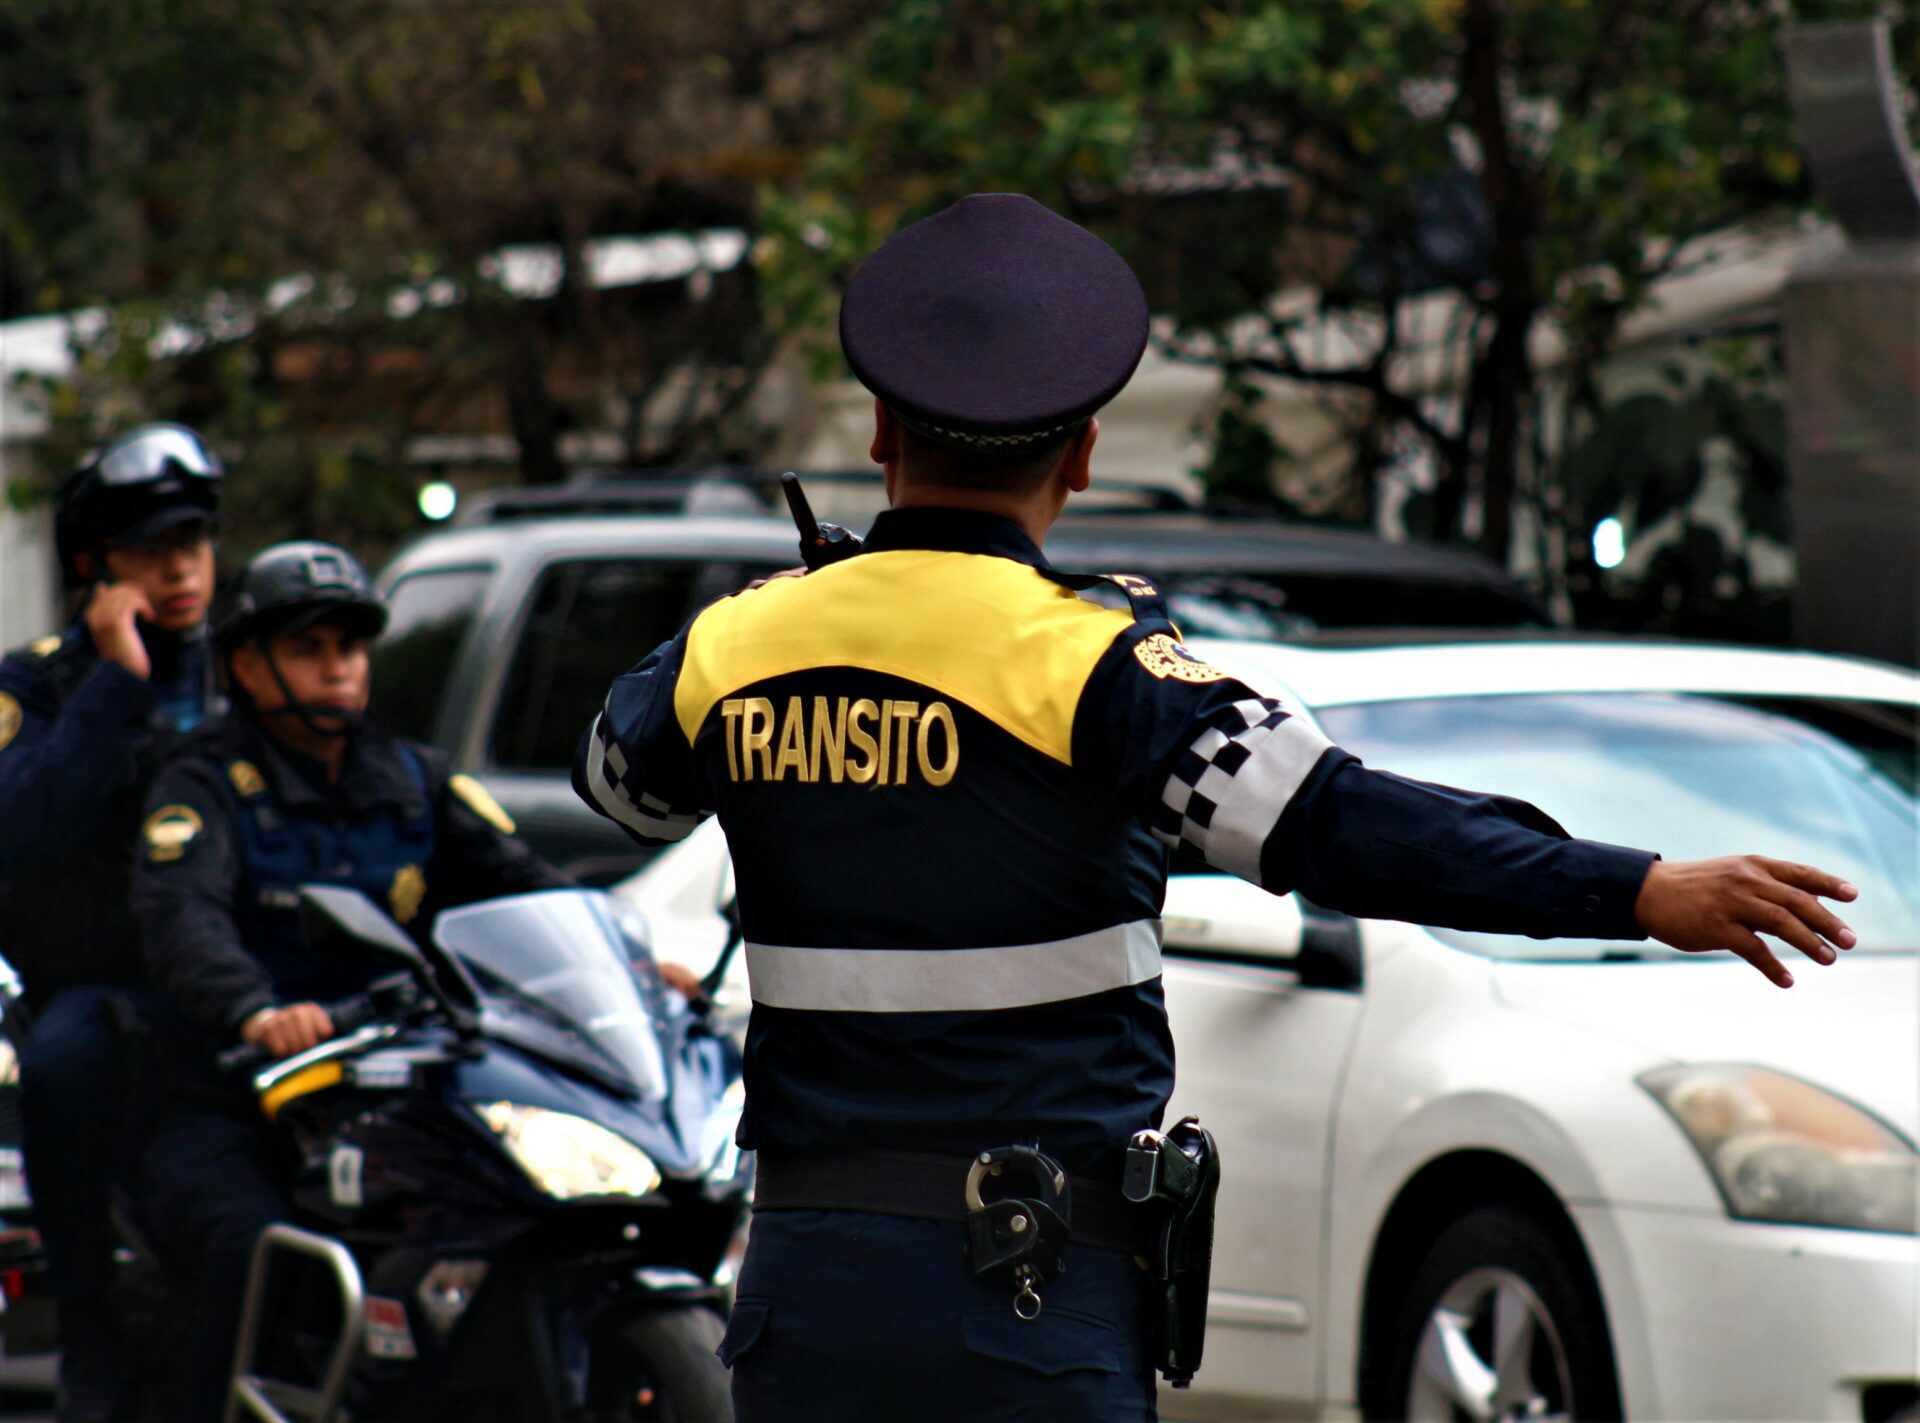 Las infracciones de tránsito más comunes en la Ciudad de México